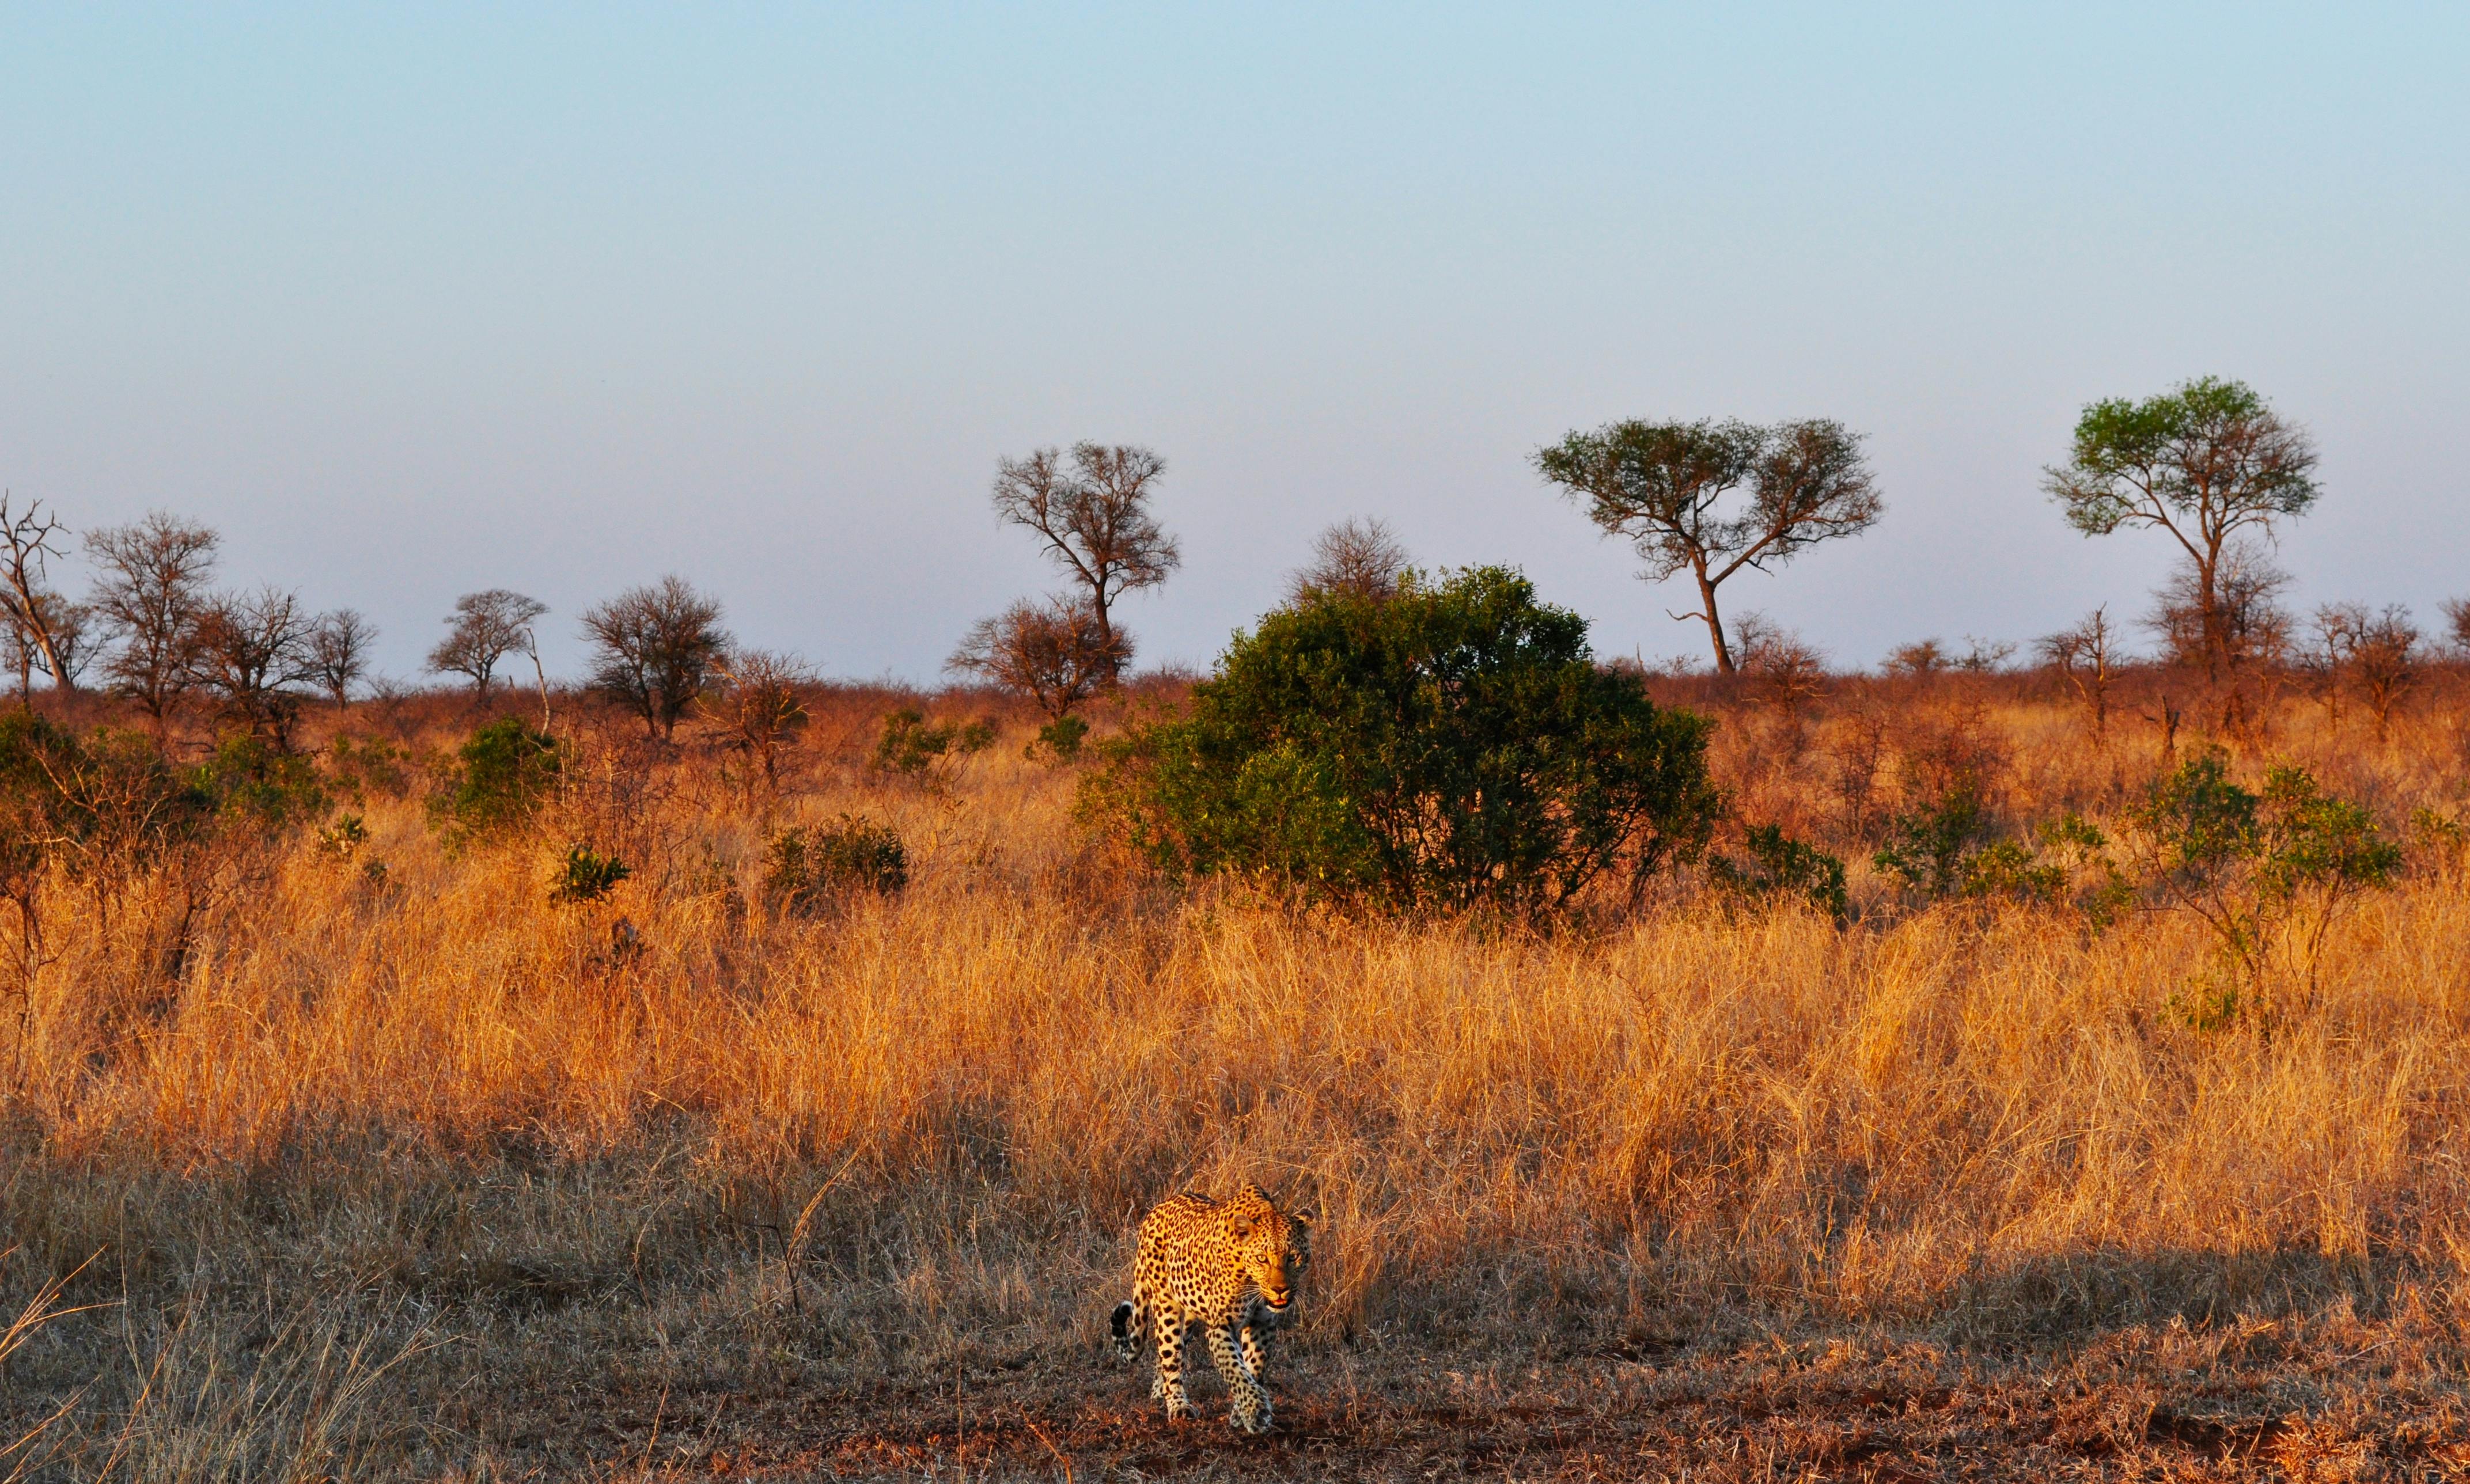 Paul Kruger National Park